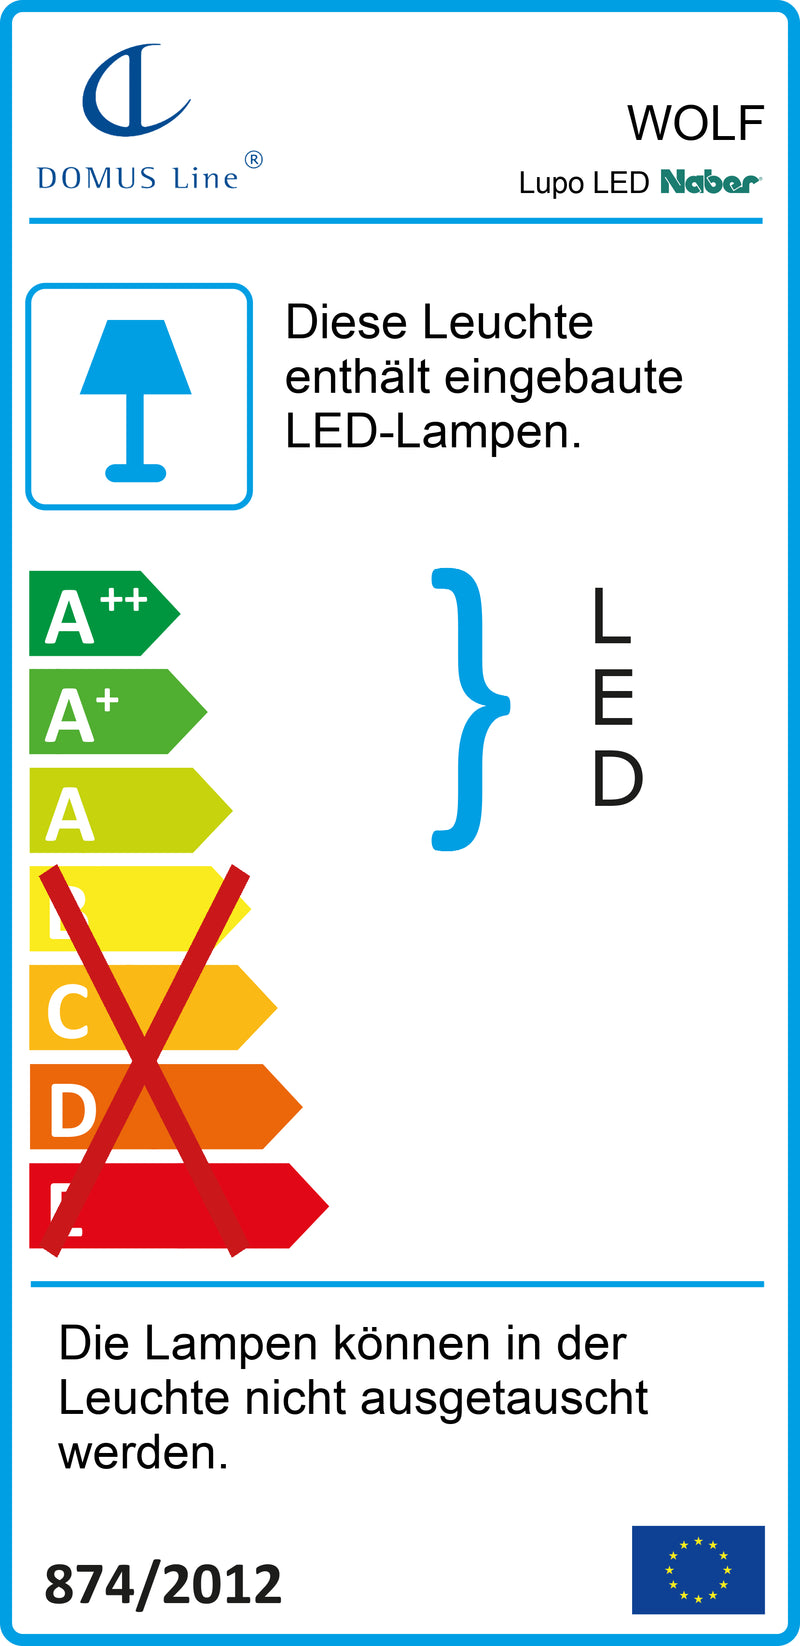 E-Label zu Zeichnung zu Lupo LED als Variante L 450 mm, 8 W, alufarbig von Naber GmbH in der Kategorie Lichttechnik in Österreich auf conceptshop.at